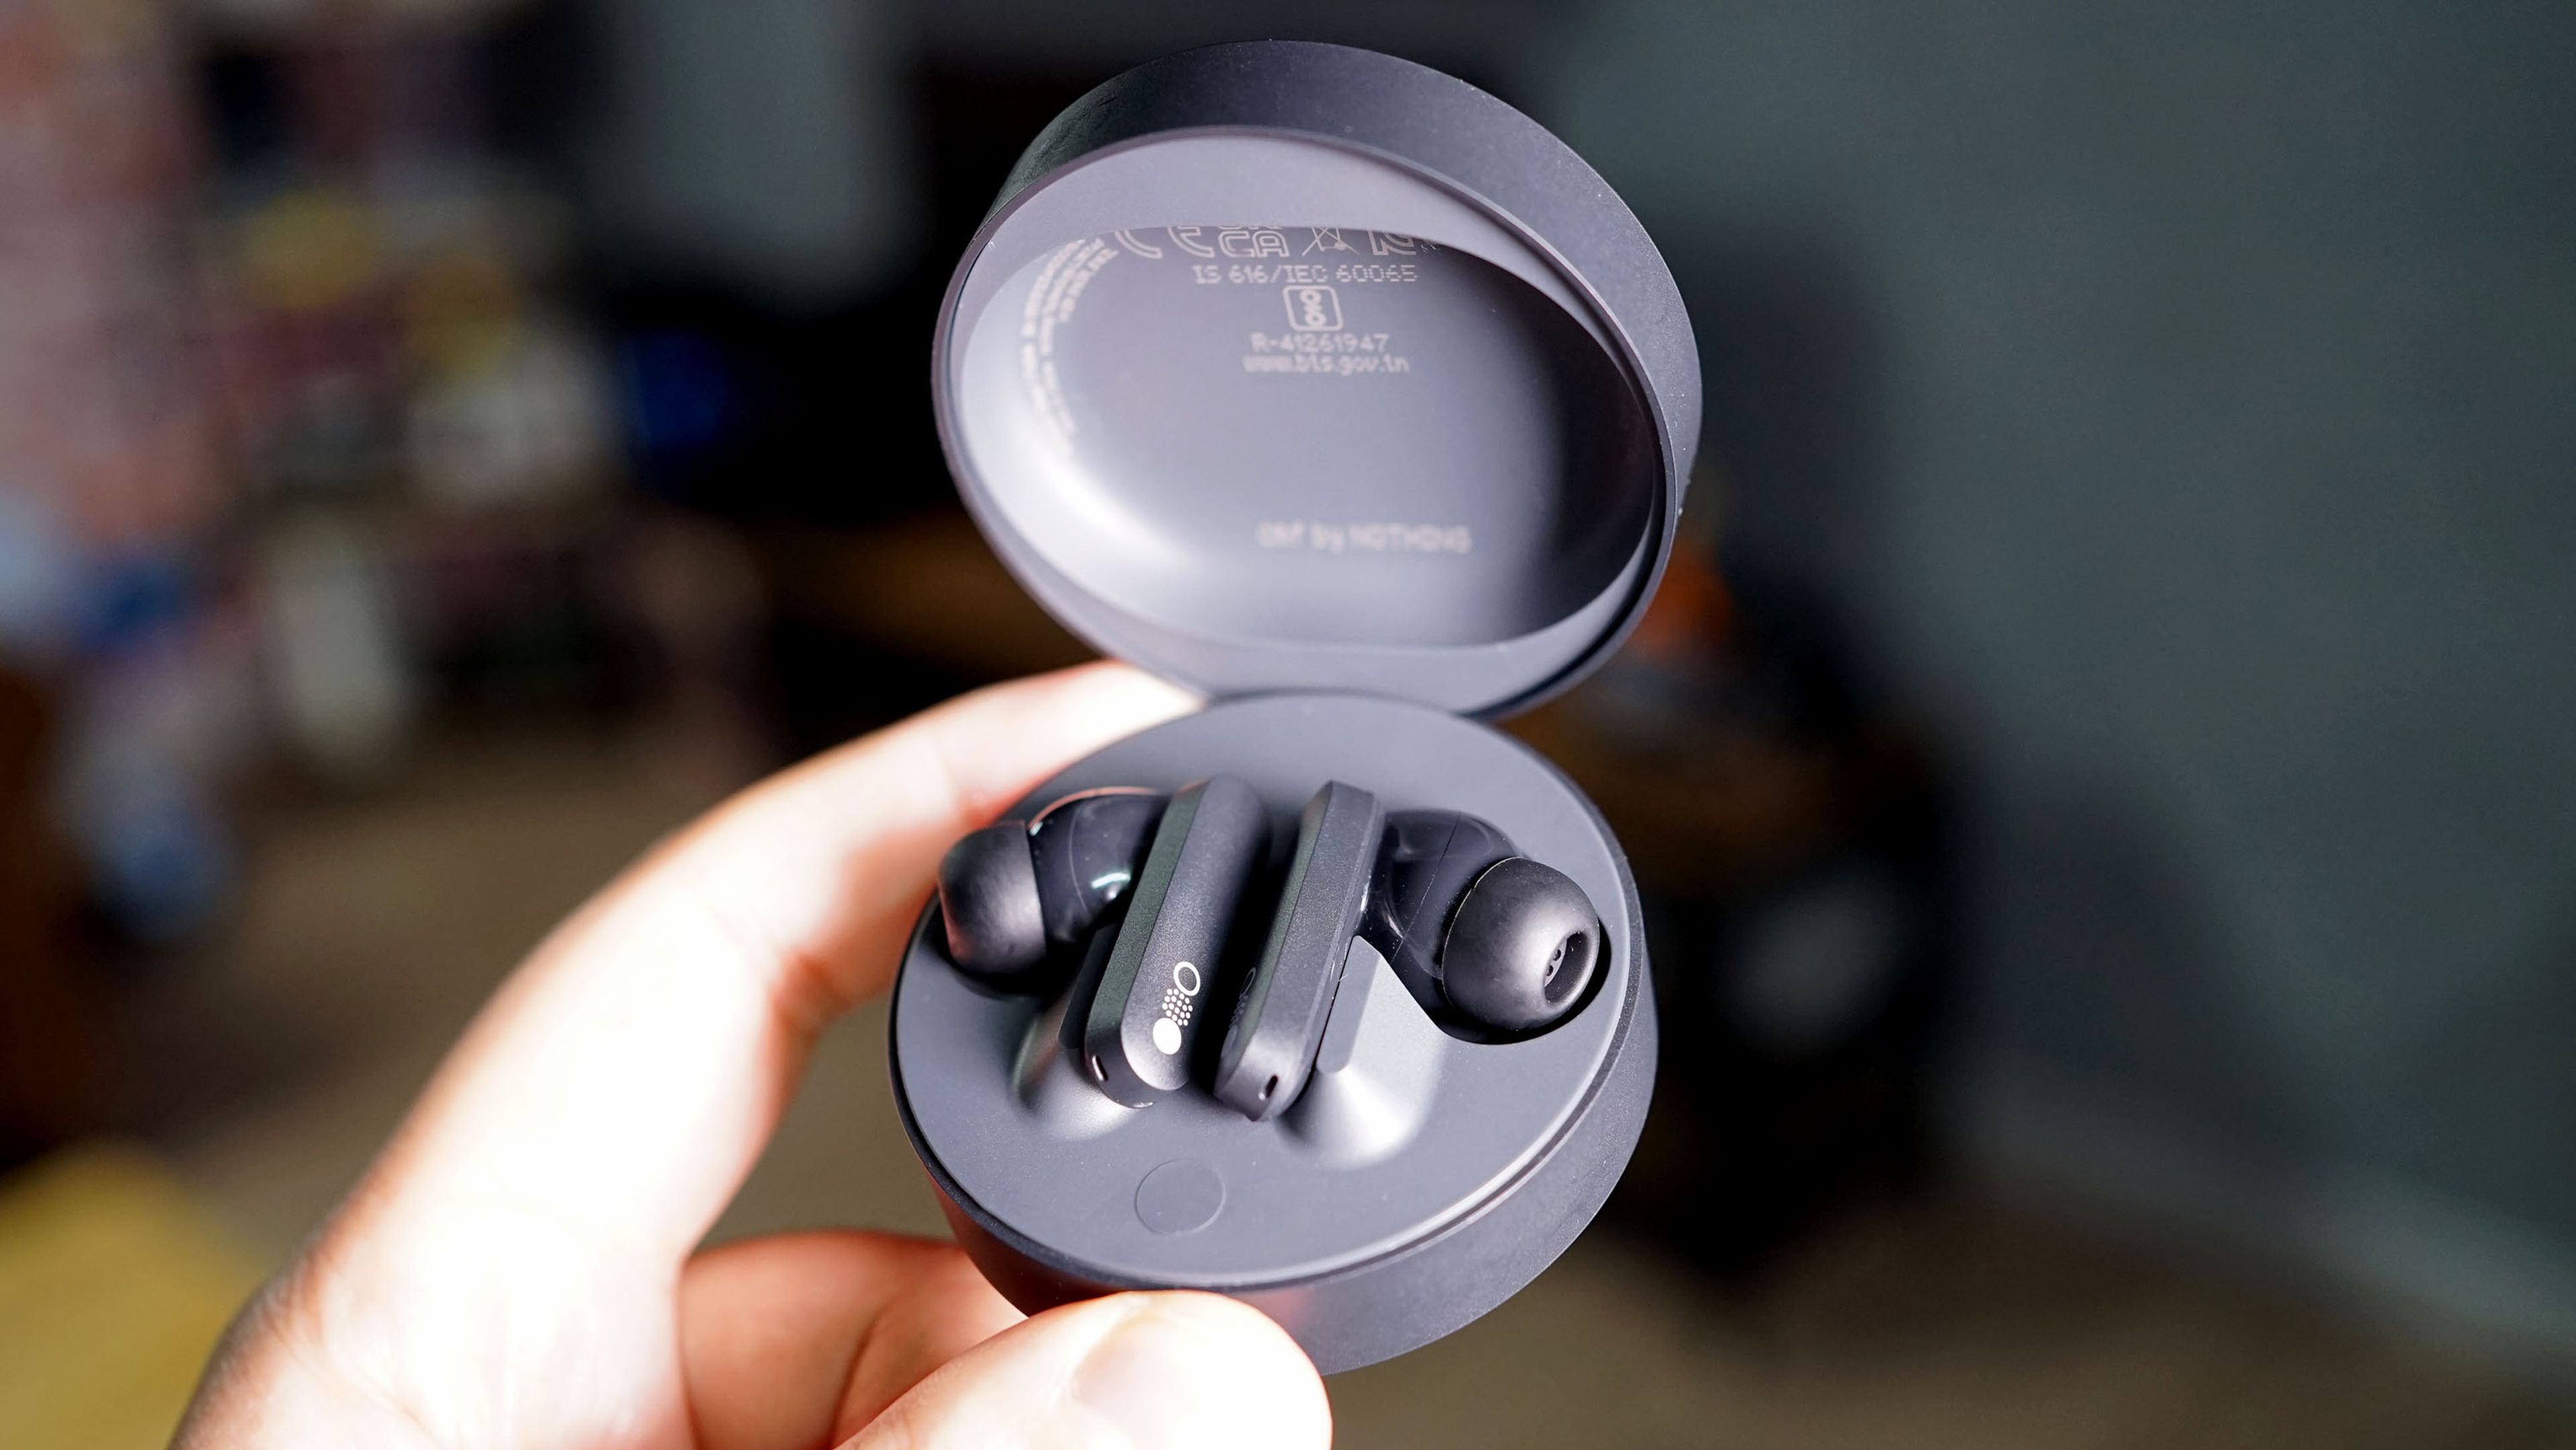 Sonido envolvente y cómodos: estos auriculares CORSAIR están rebajados 30  euros por tiempo limitado